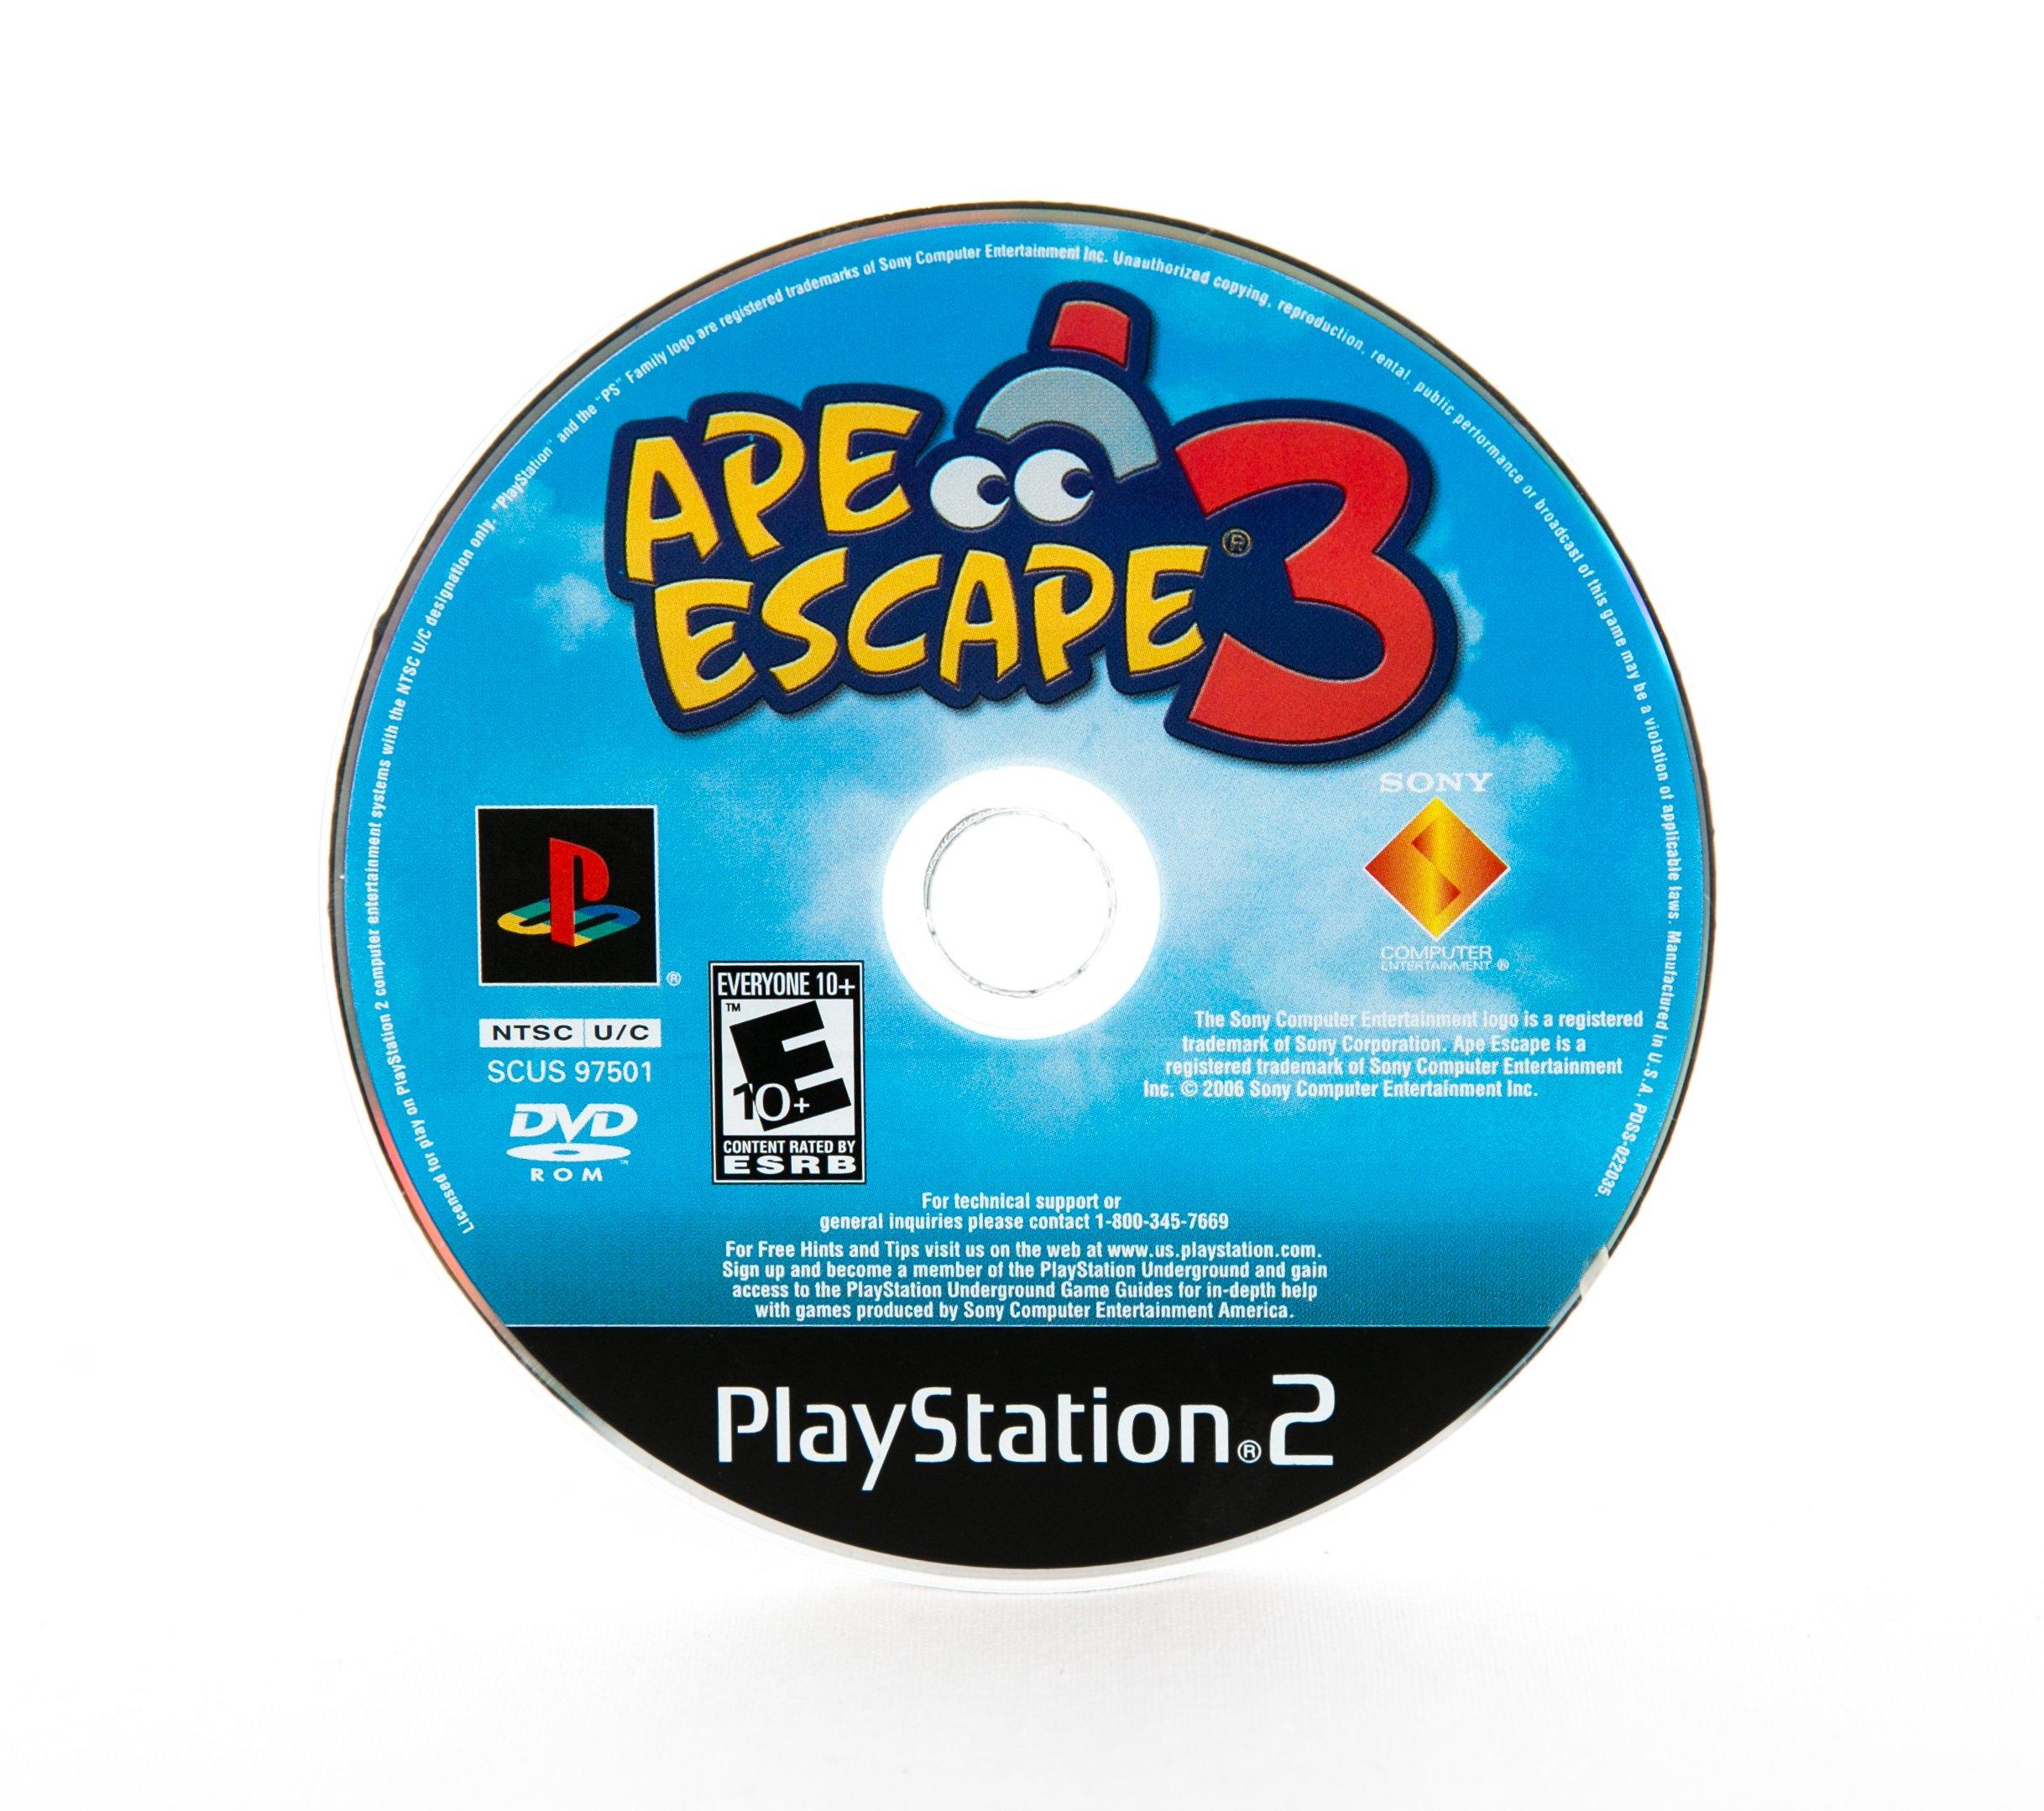 ape escape 3 ps2